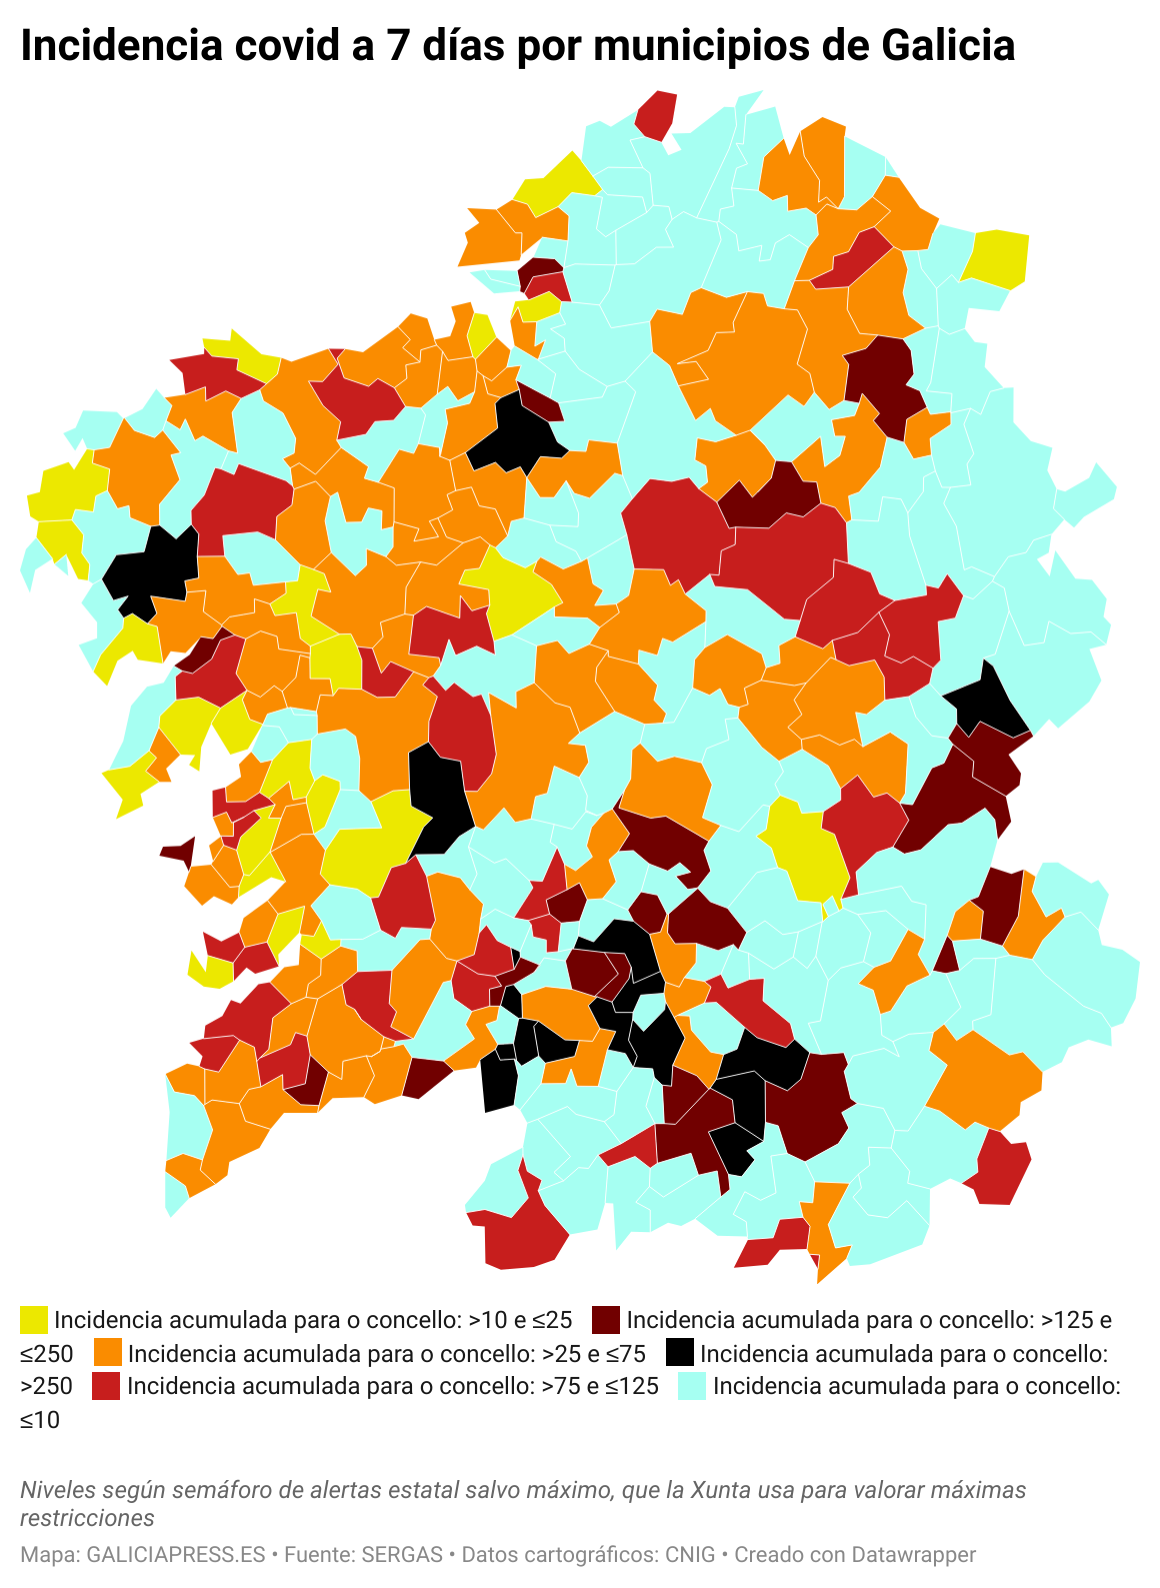 ClElv incidencia covid a 7 d as por municipios de galicia  (5)